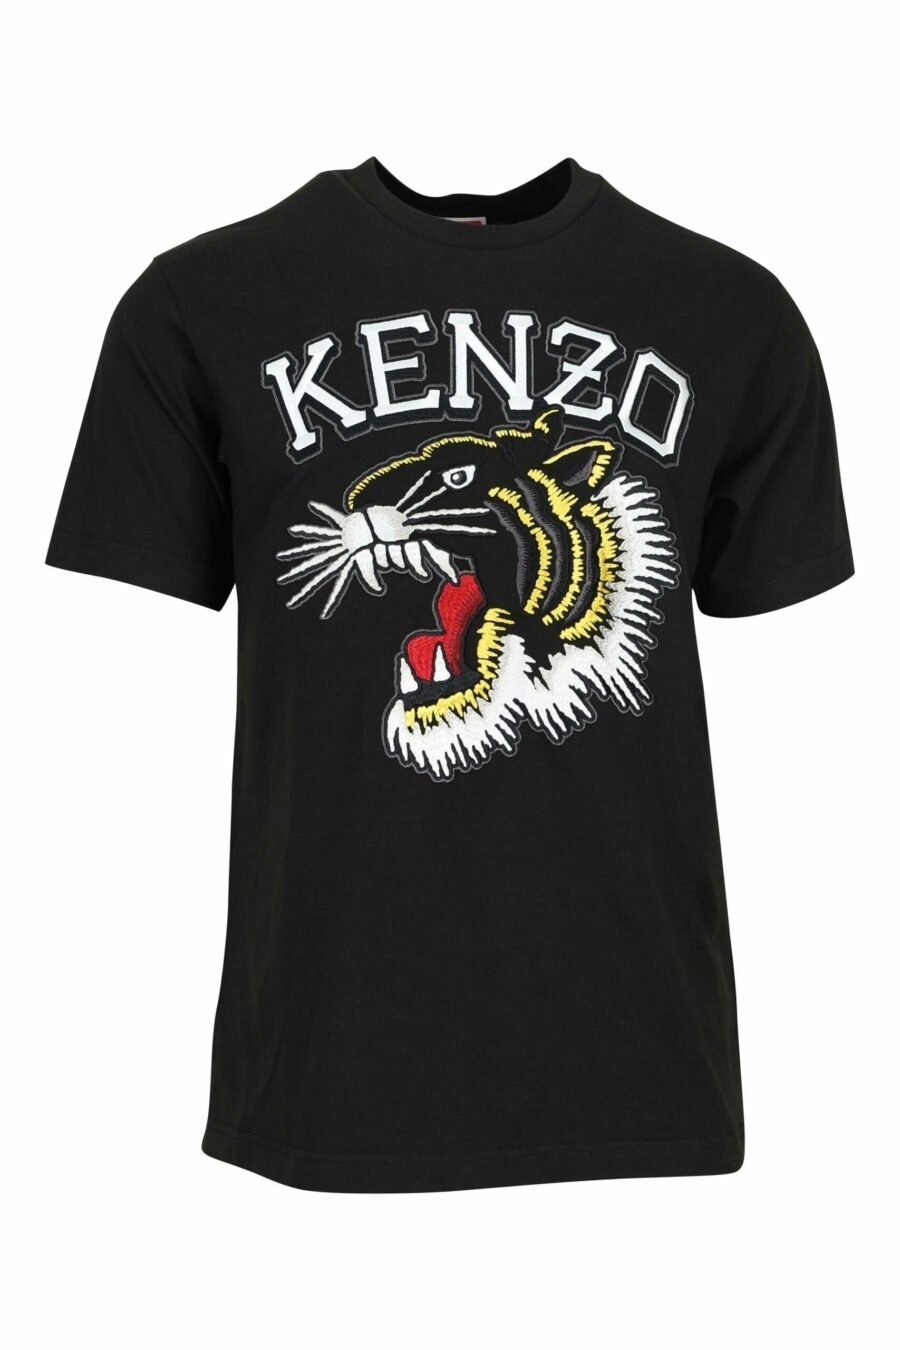 Camiseta negra con maxilogo tigre multicolor - 3612230625112 scaled